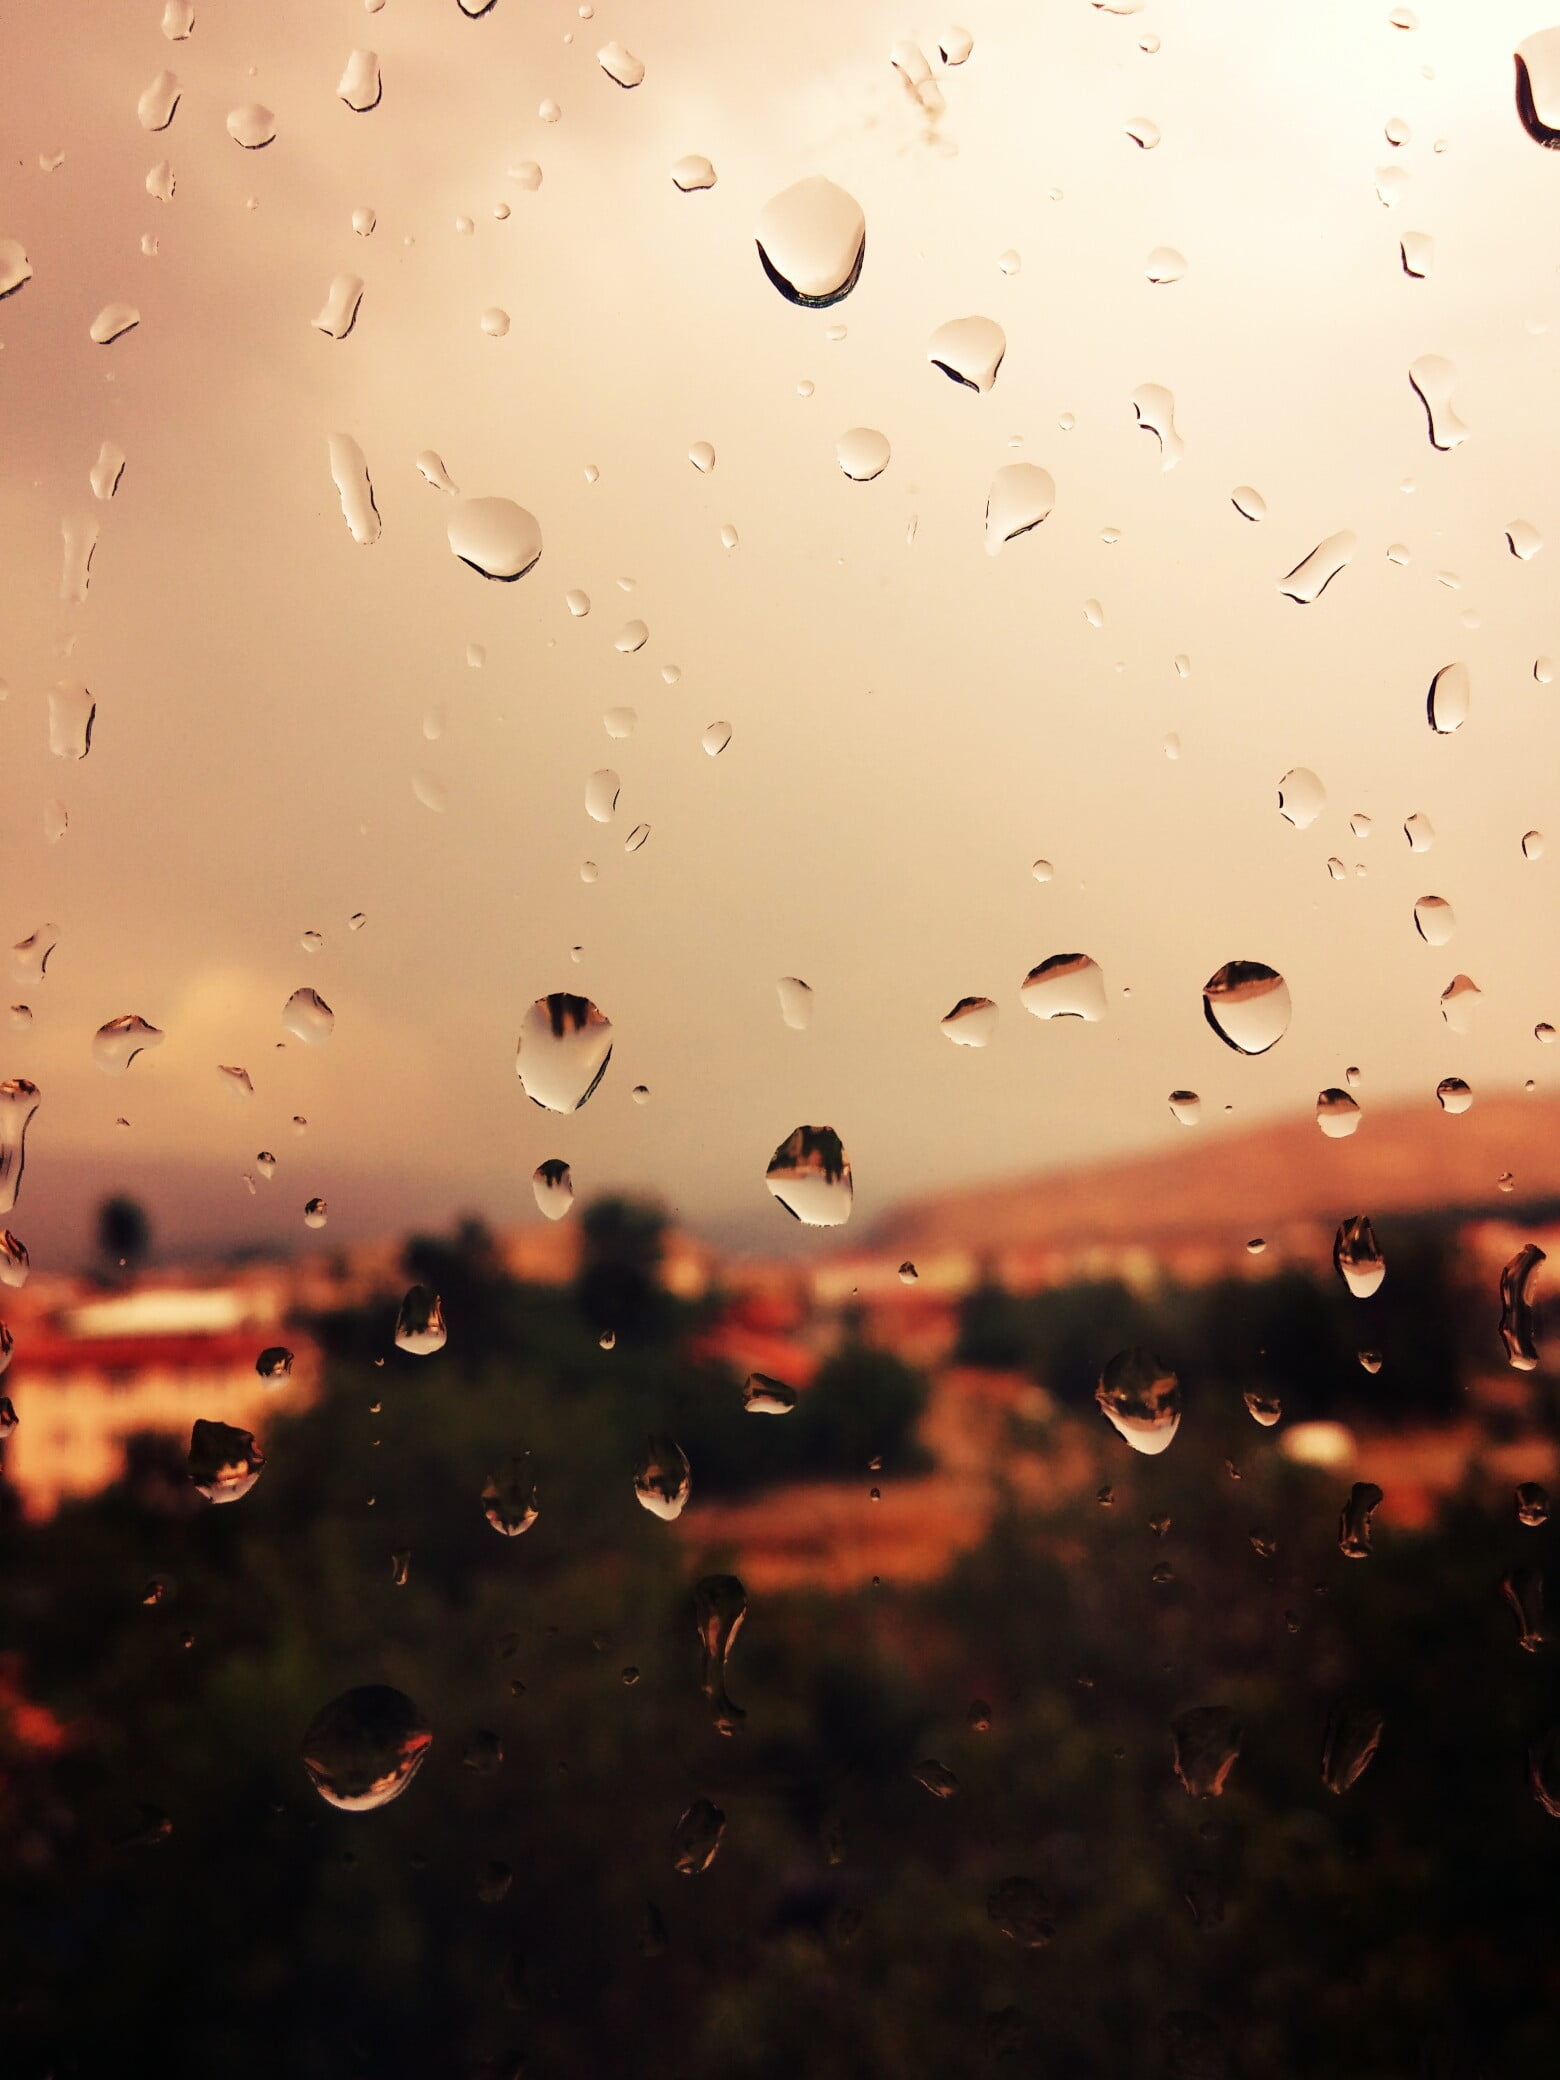 Картинка капли дождя. Капли на стекле. Капли дождя. Капли дождя на стекле. Мокрое стекло.